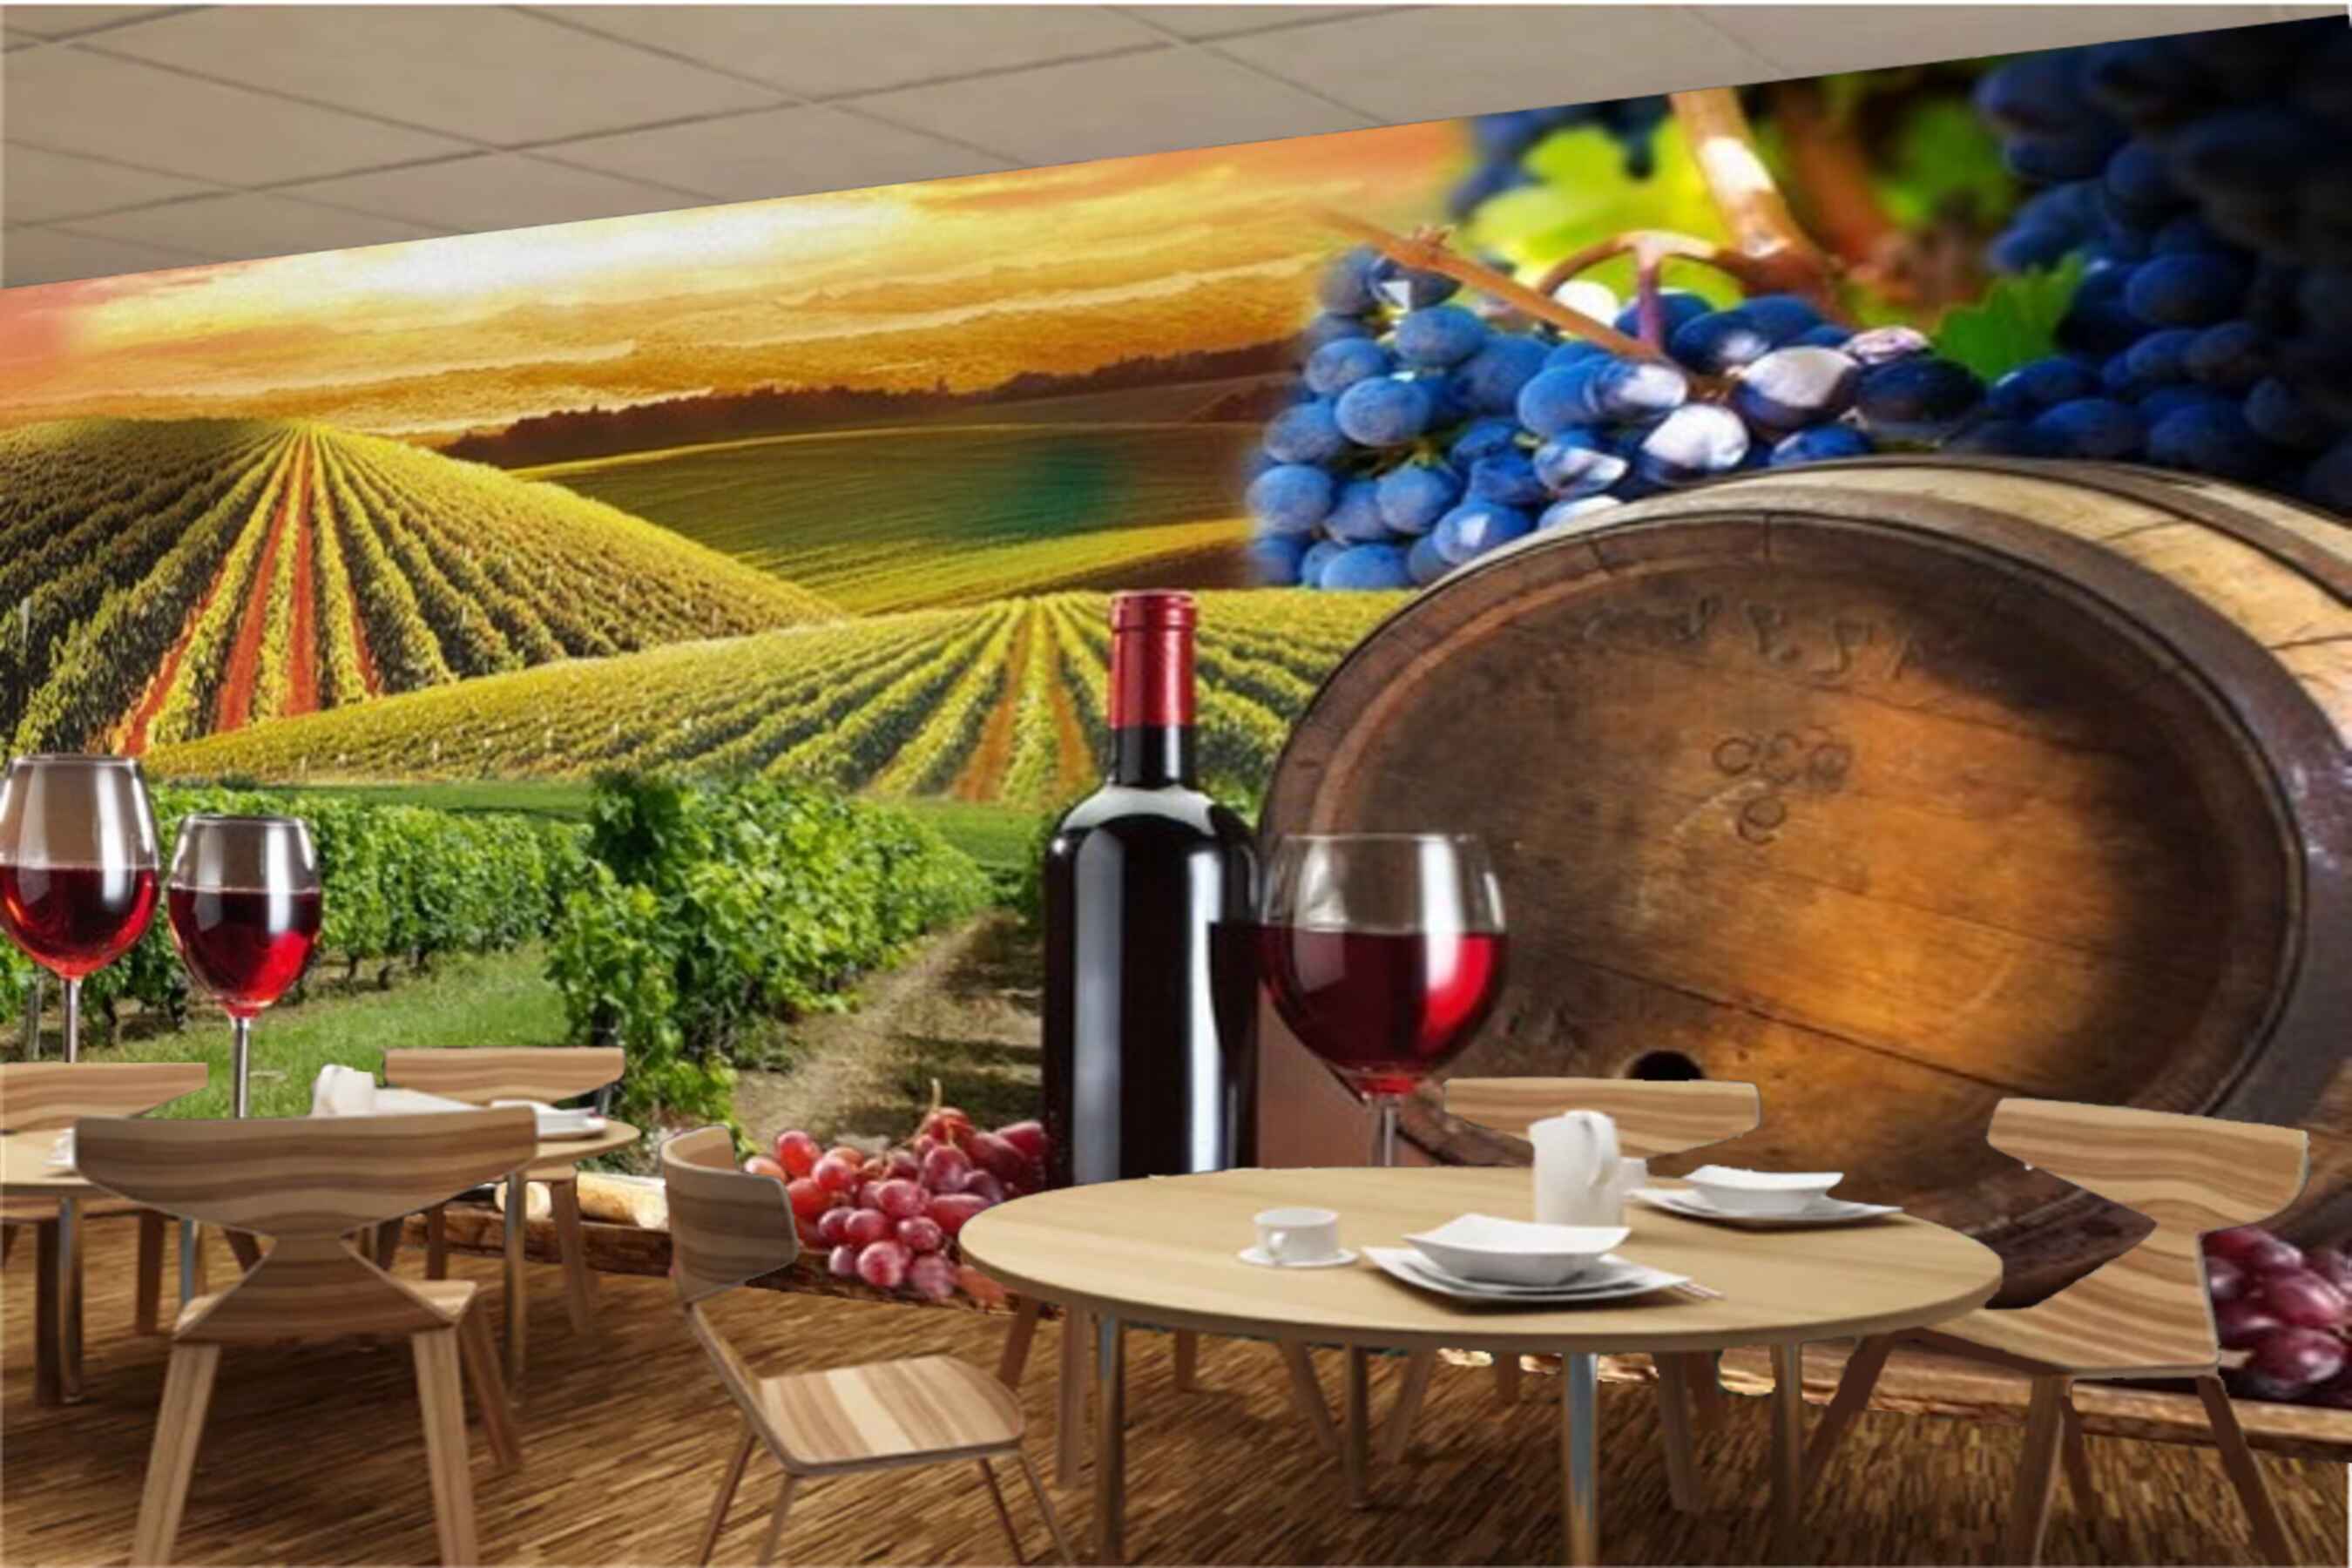 Avikalp MWZ3104 grape Wine Farm Glasses Bottle HD Wallpaper for Cafe Restaurant